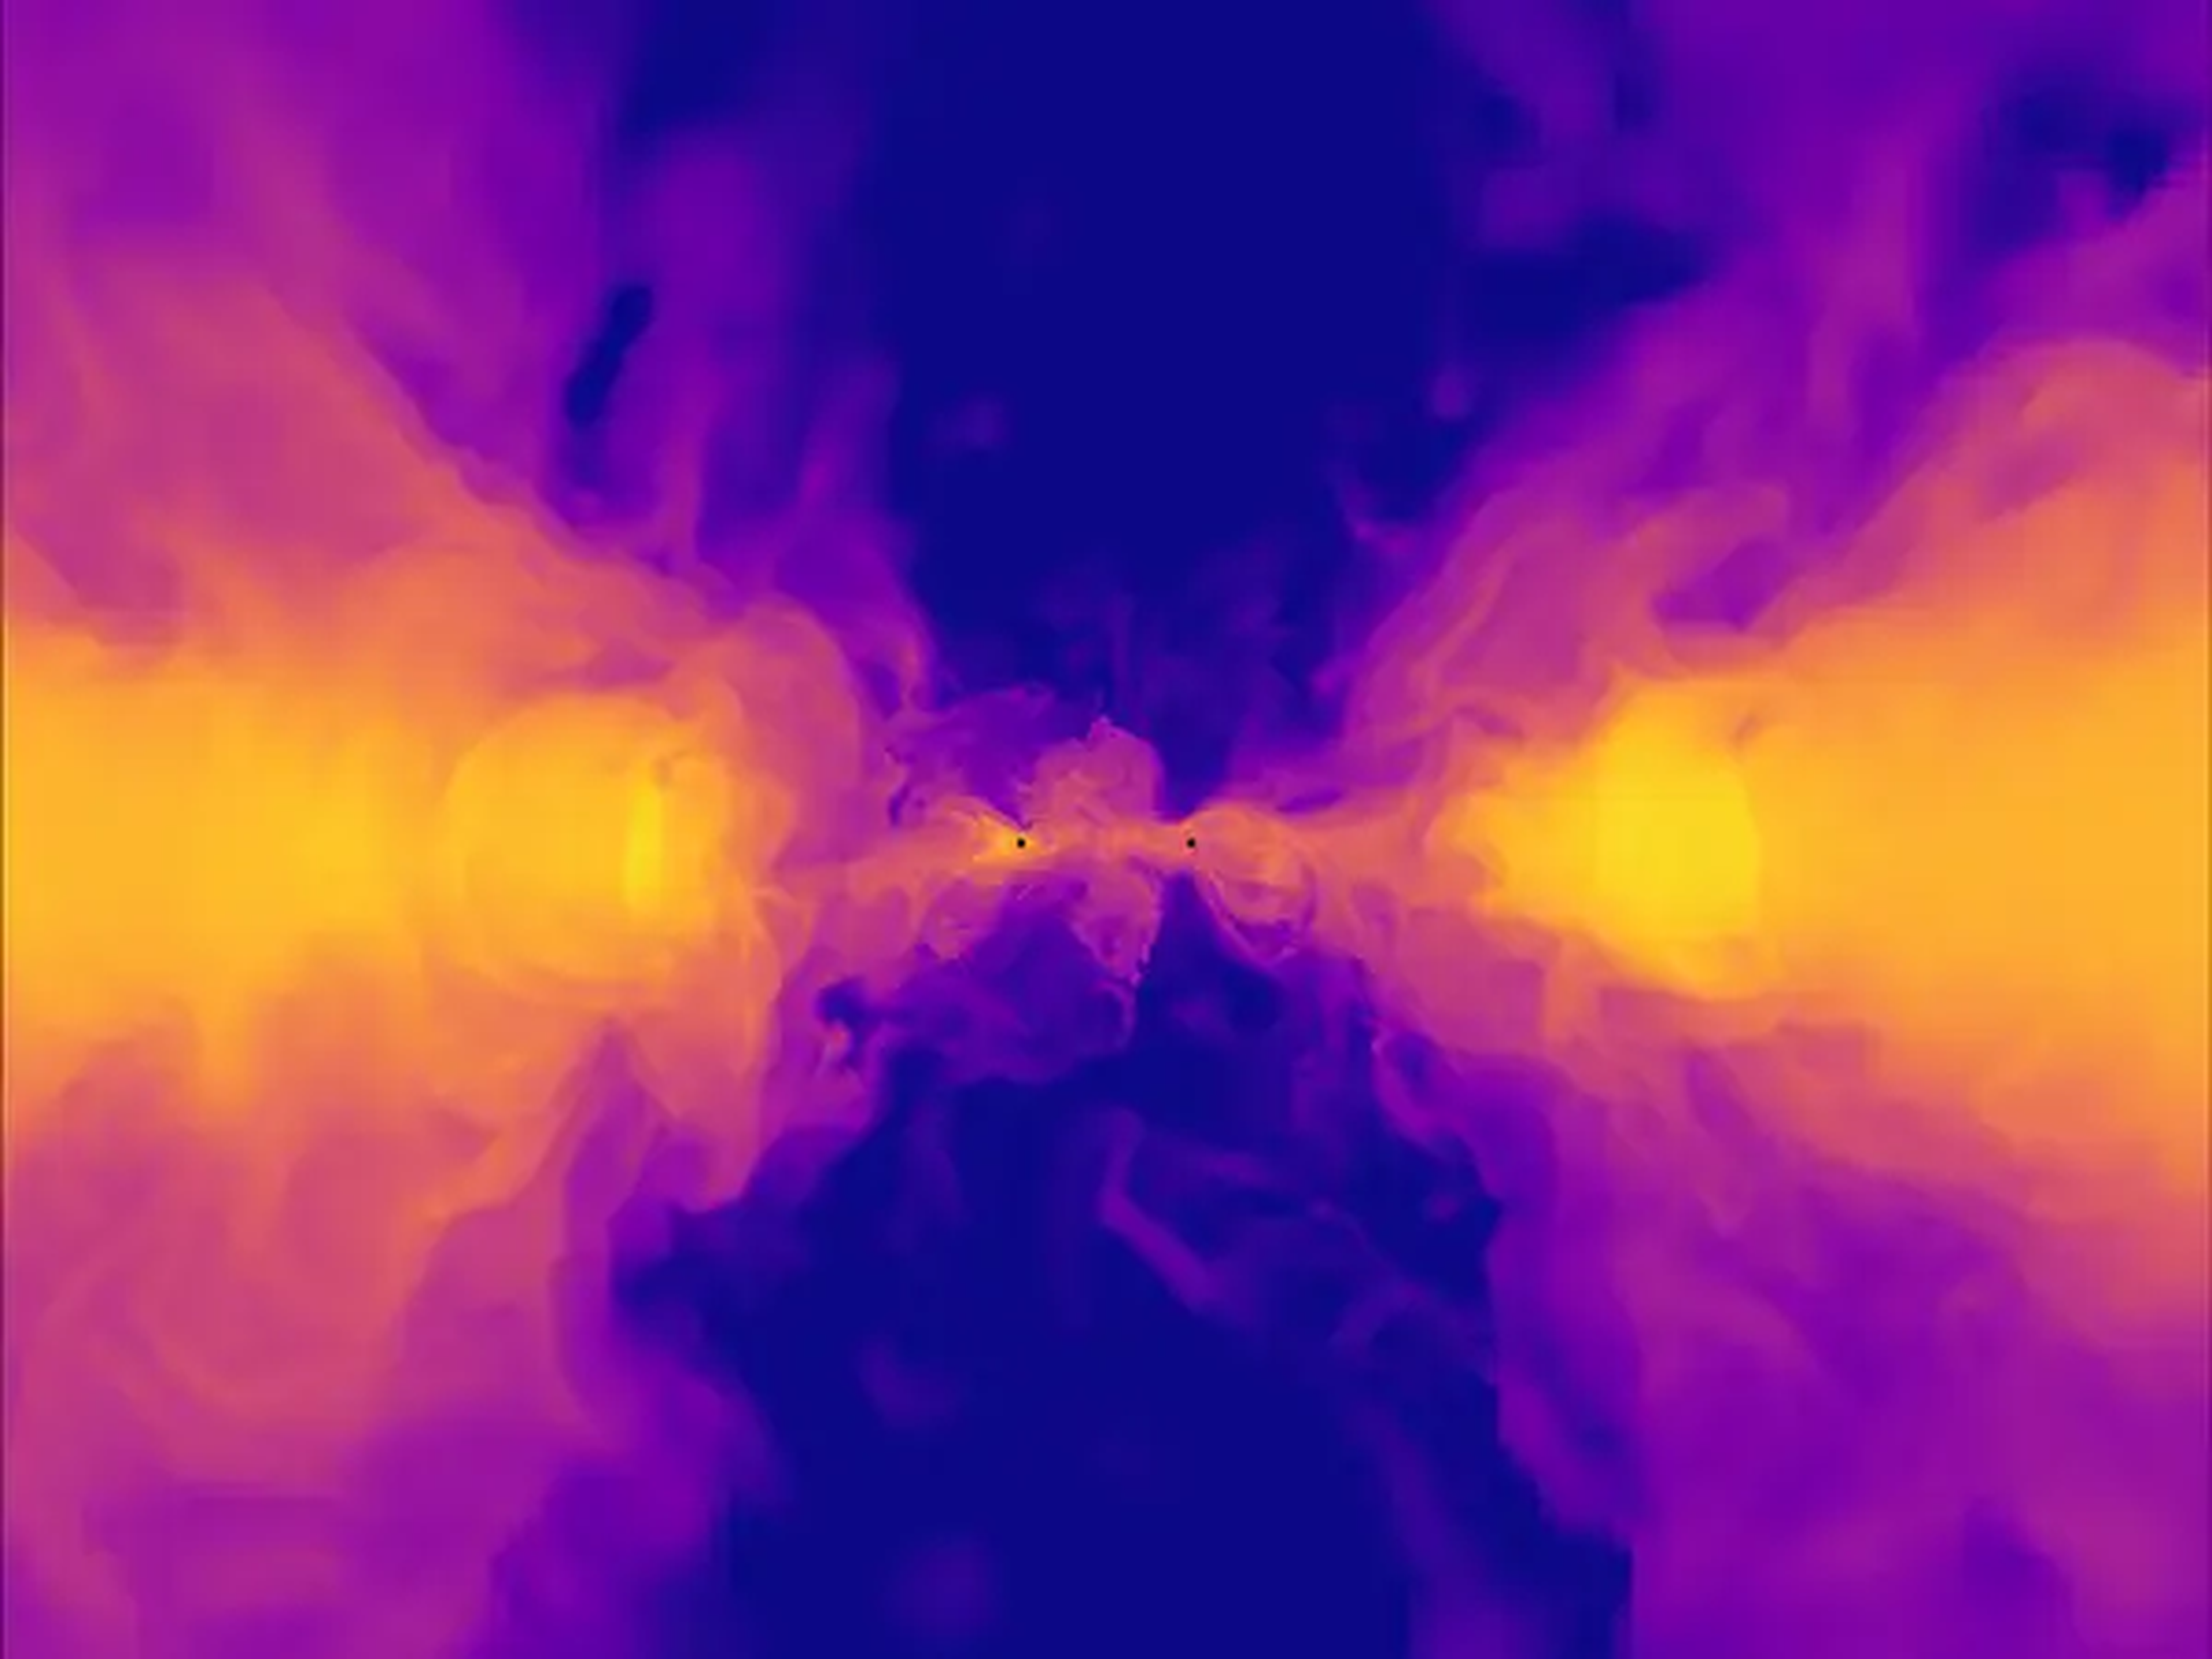 Simulación de agujeros negros en fusión